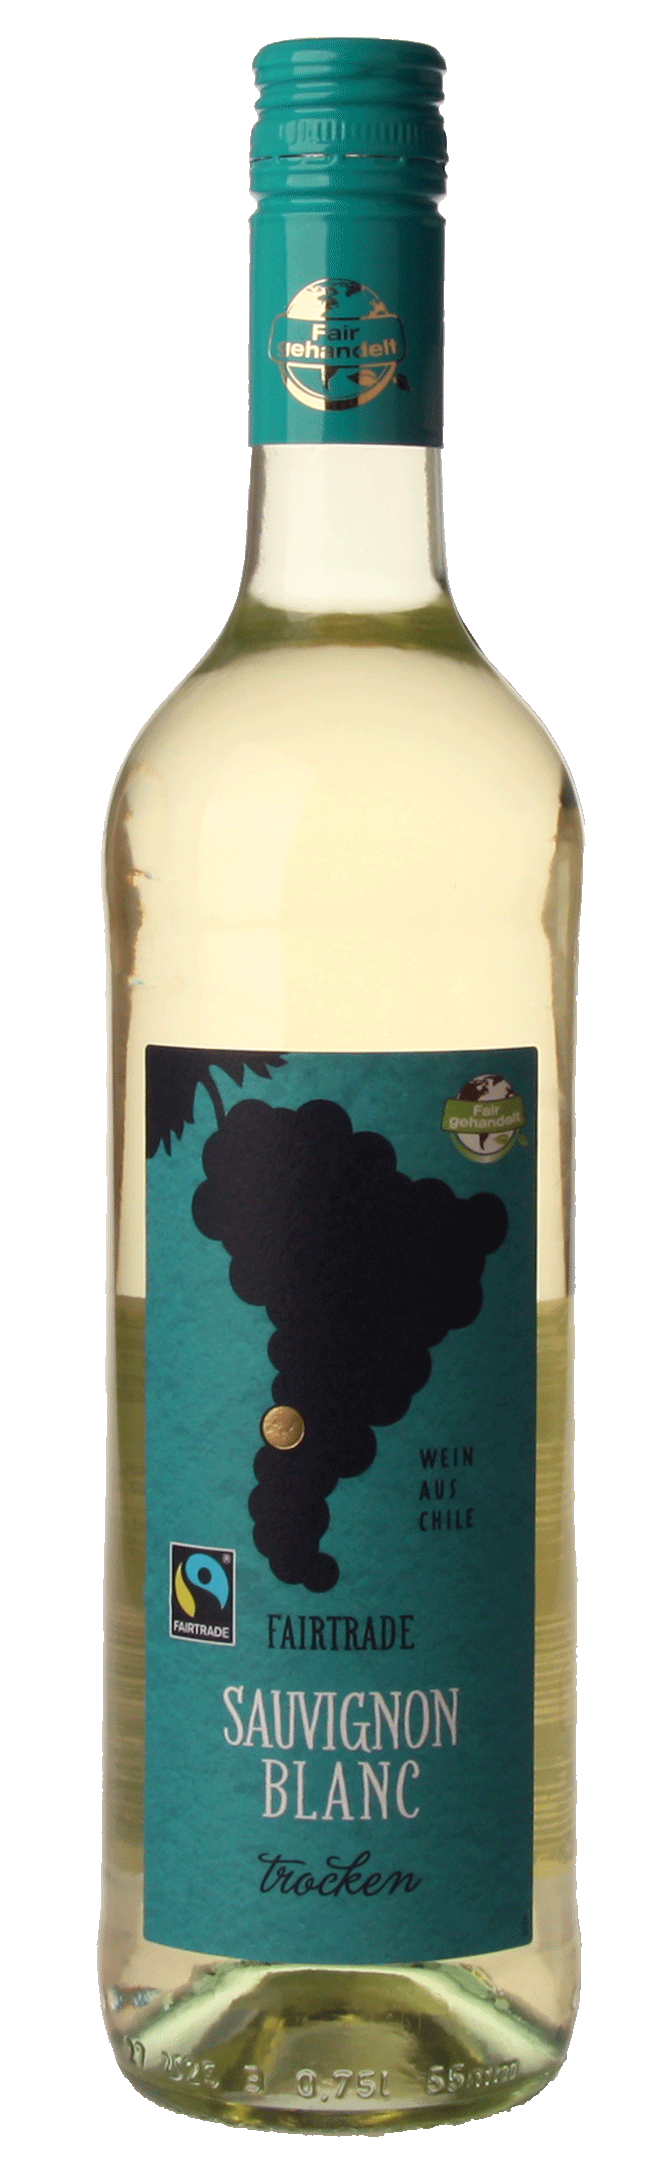 Sauvignon Blanc Chile Fairtrade tr. 0,75 Lfl.